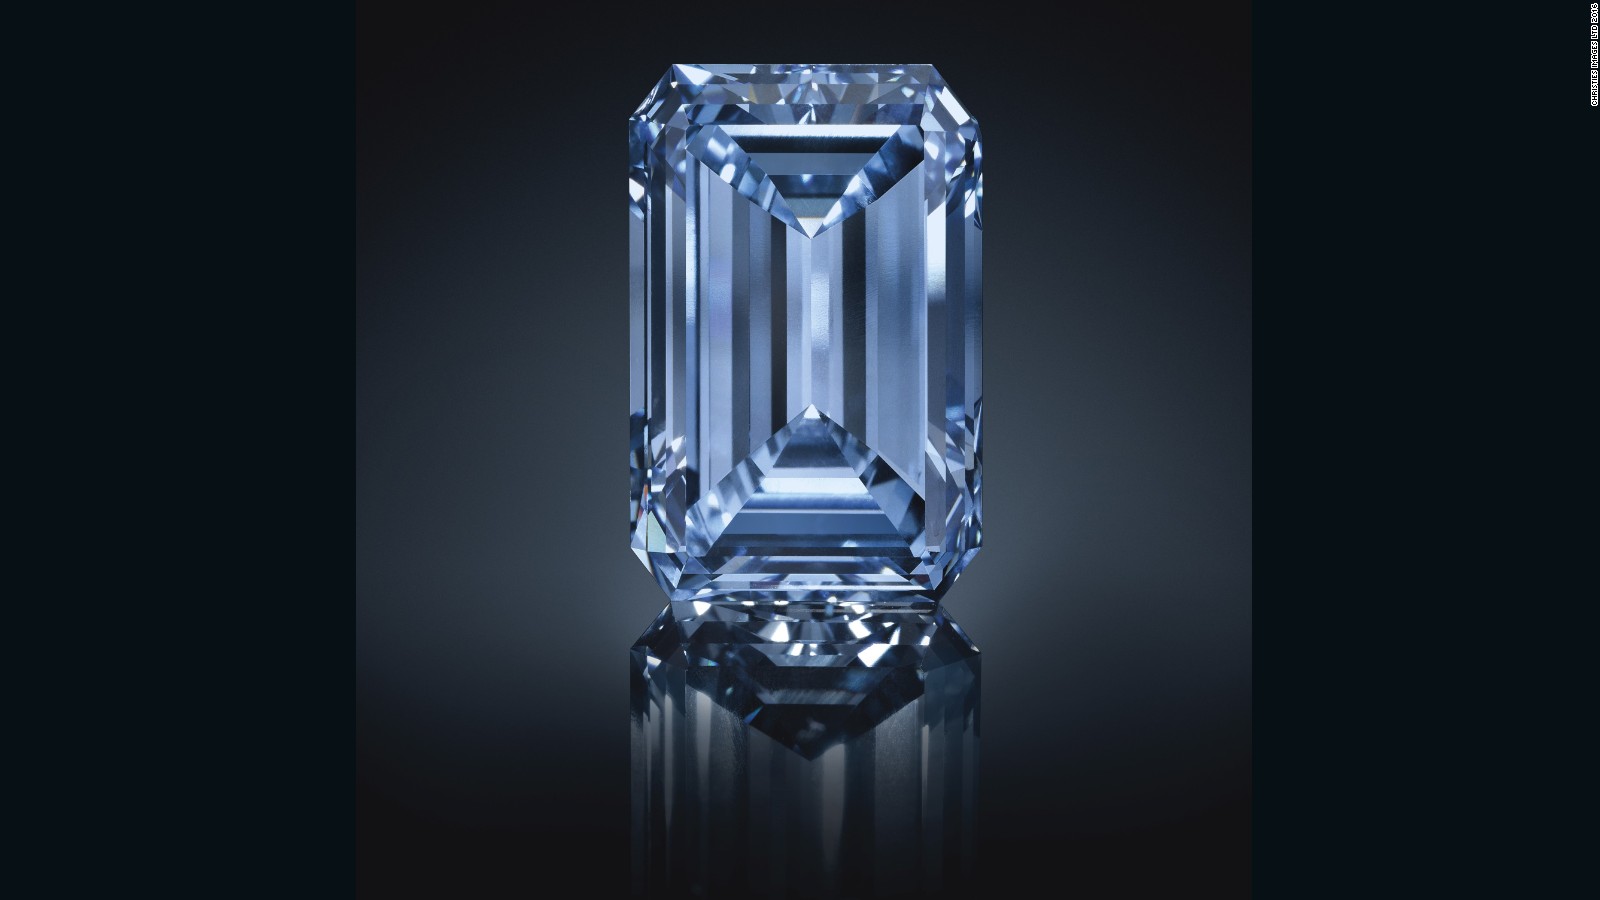 El diamante azul más grande del mundo y una de las piedras más raras del mundo, conocida como ‘Oppenheimer Blue’, fue vendida por 57.5 millones de dólares el pasado 18 de mayo de 2016 en una subasta de Christie’s en Ginebra. Este es el diamante más caro alguna vez subastado en la historia. 